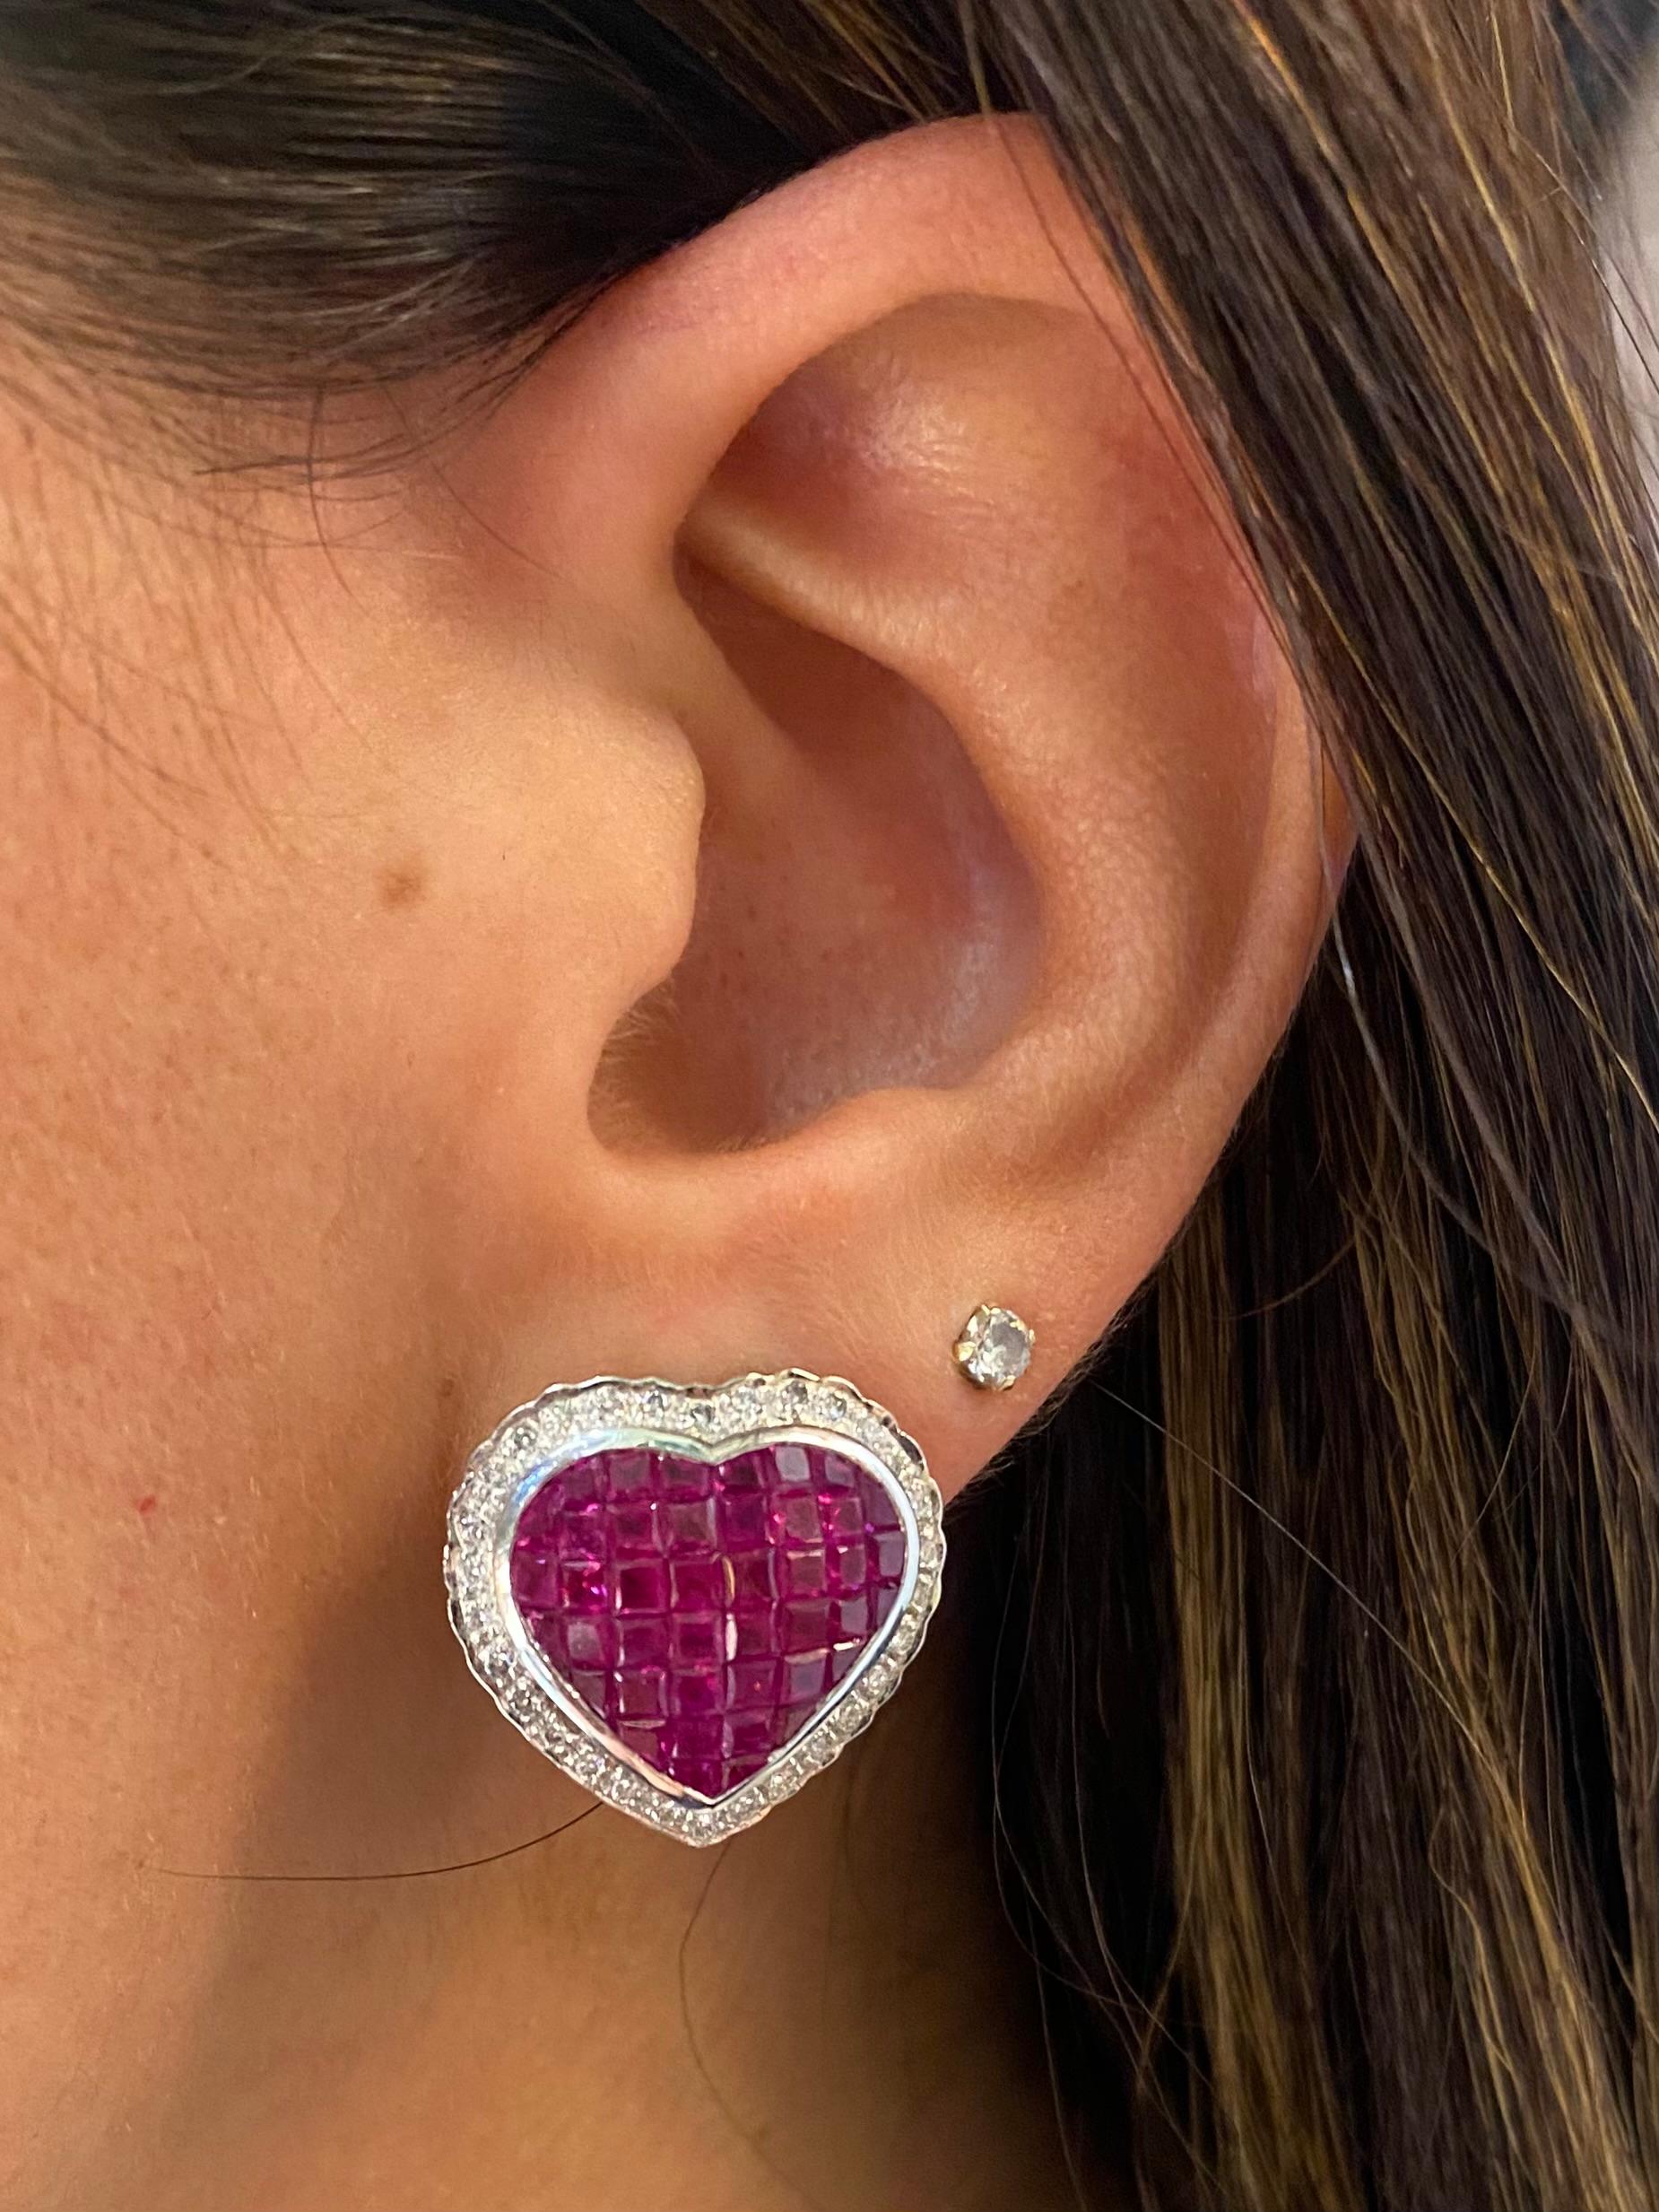 Boucles d'oreilles Mystère en rubis et diamants

Paire de boucles d'oreilles en or blanc 18 carats en forme de cœur, serties de 84 rubis de taille carrée et de 60 diamants de taille ronde.

Estampillé 750

Dimensions : 0.75